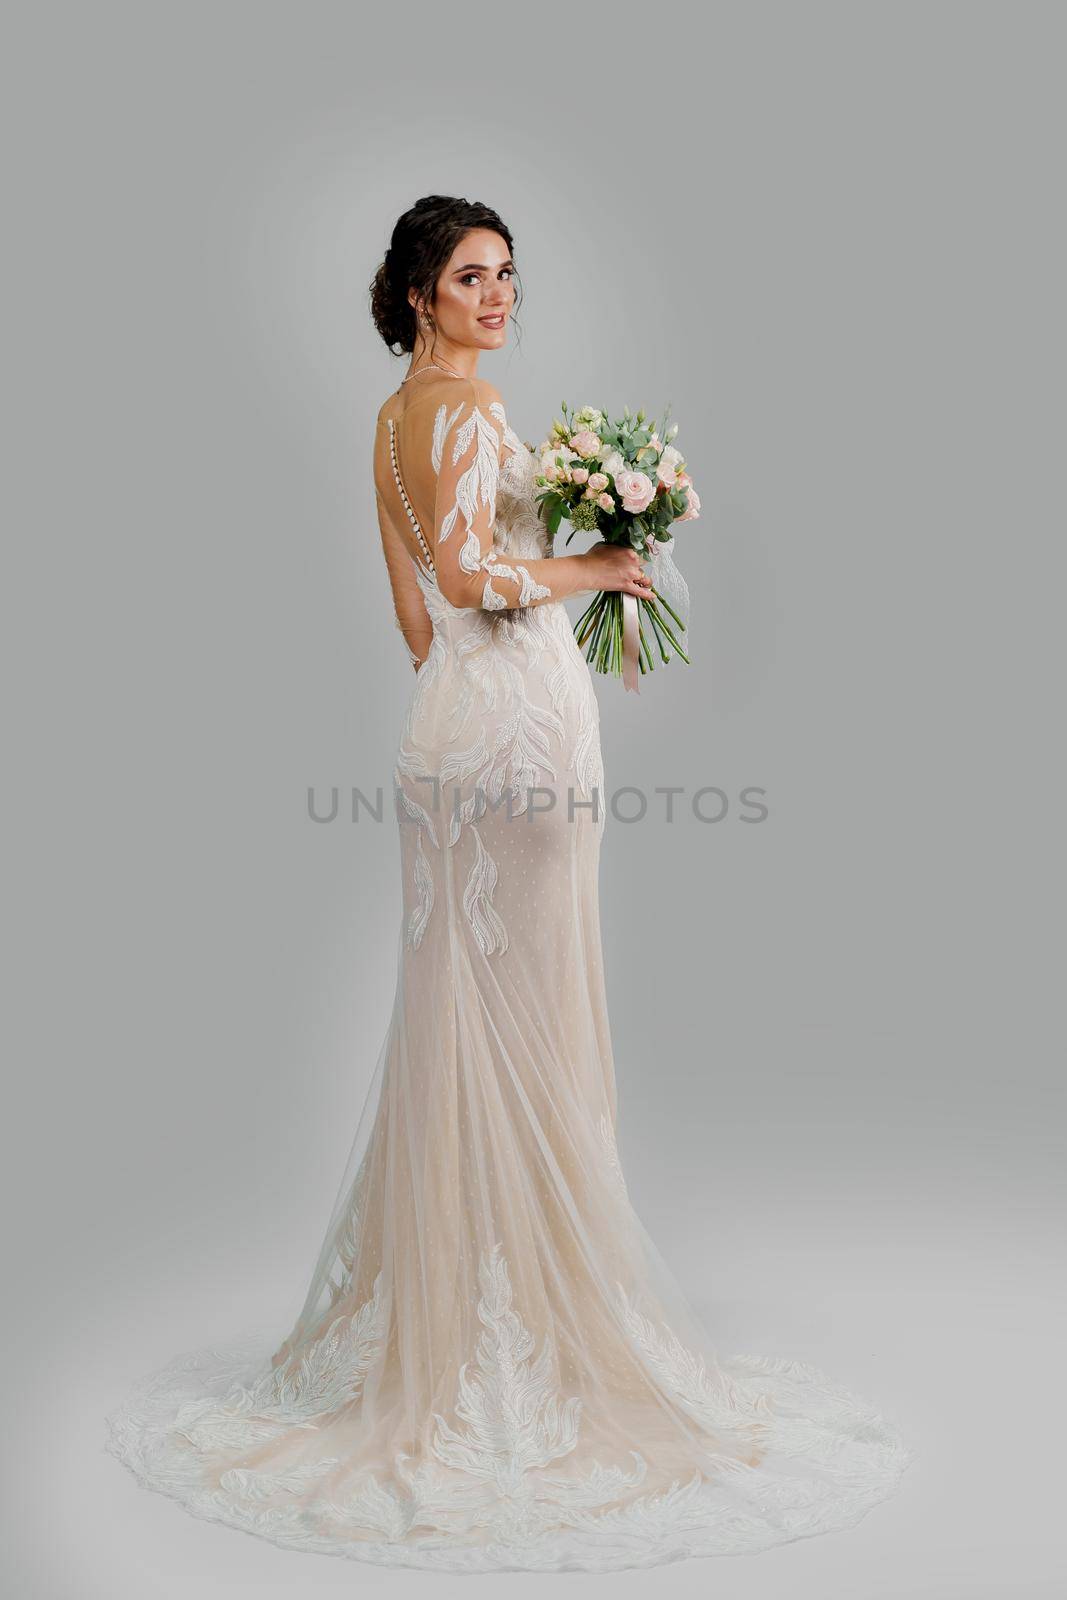 Girl in wedding dress on white blank background. Bride in white wedding dress with bouquet in studio